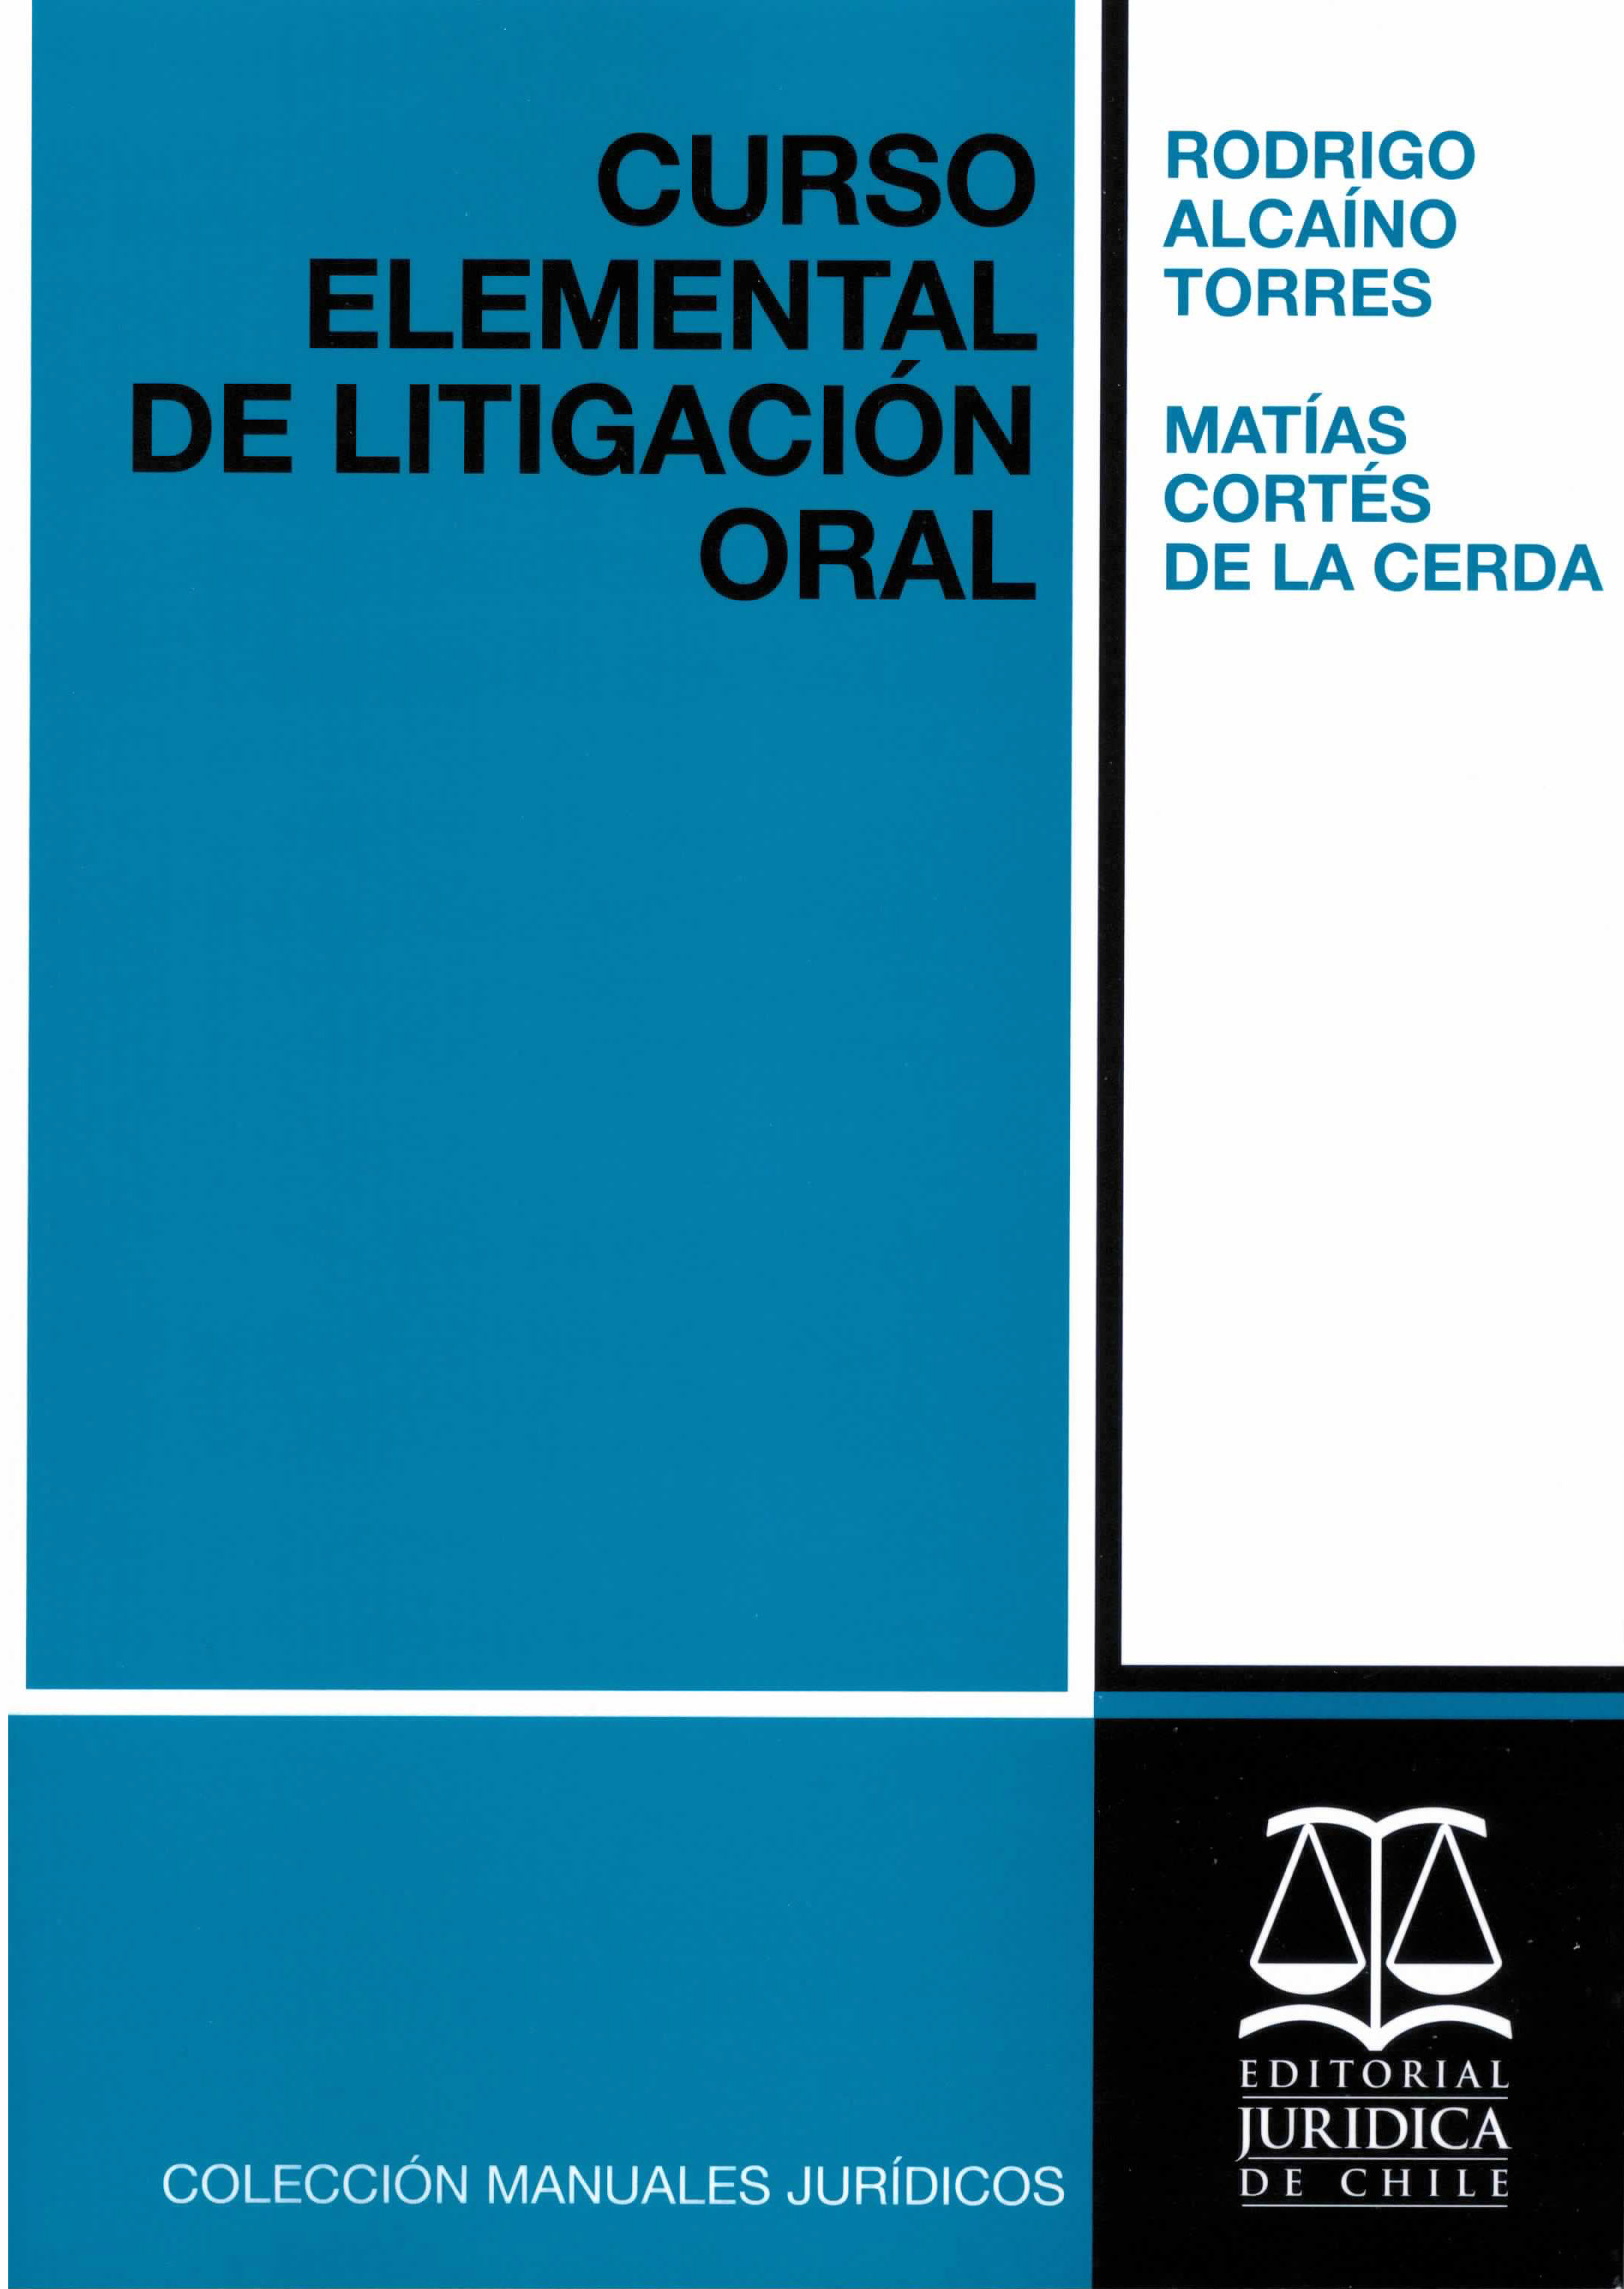 Curso elemental de litigación oral